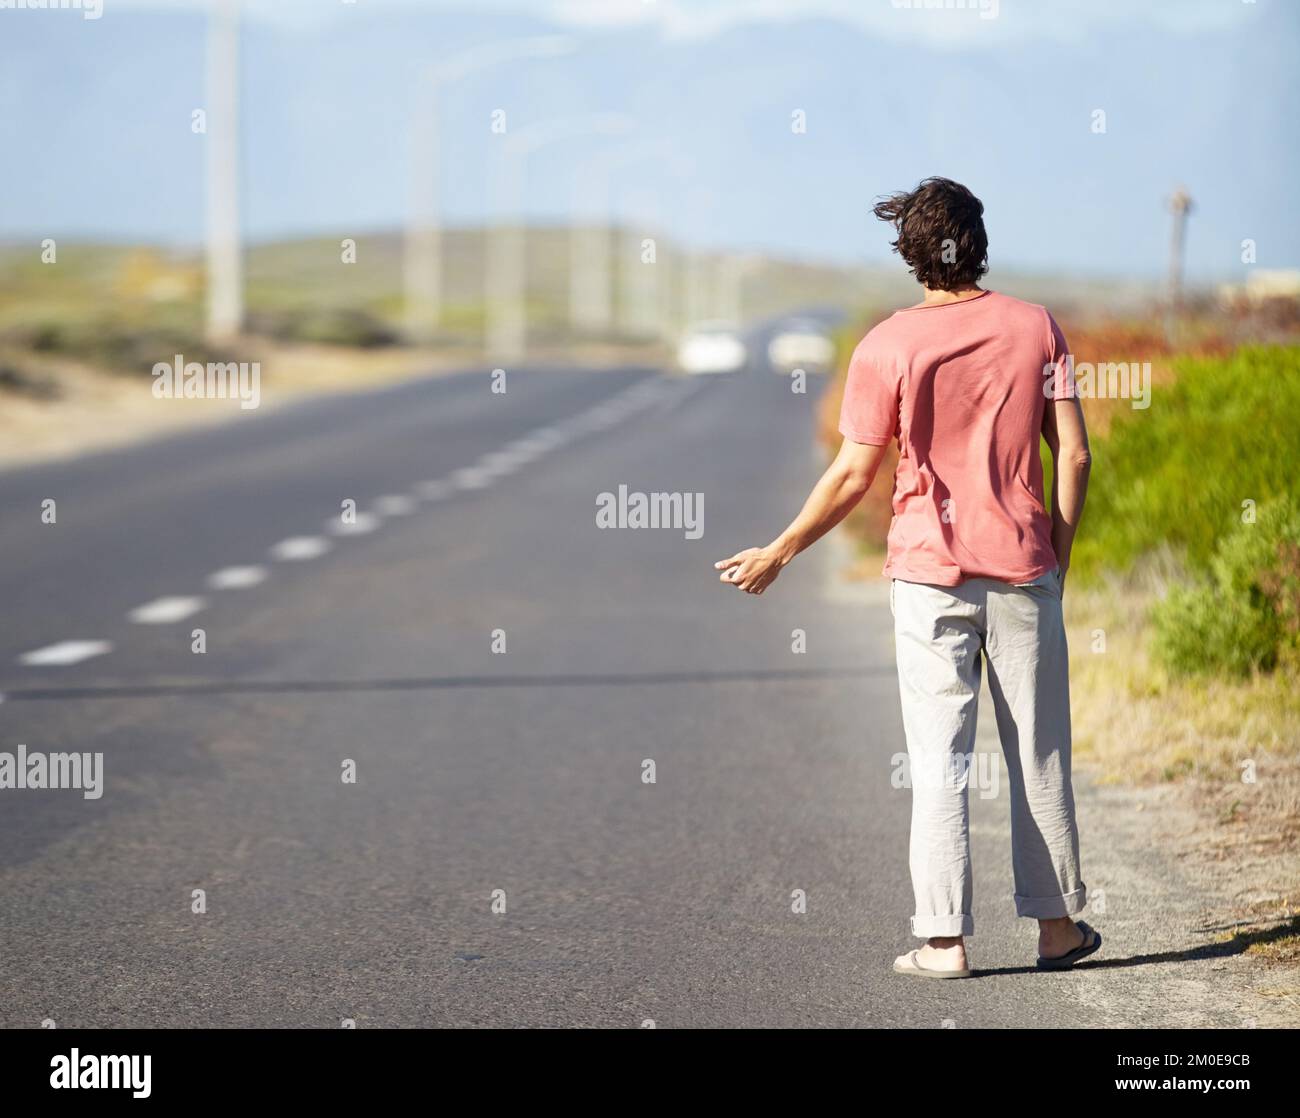 Indovino che Ill debba hitchhike. Un giovane che cerca di agganciare un giro mentre cammina lungo una strada deserta. Foto Stock